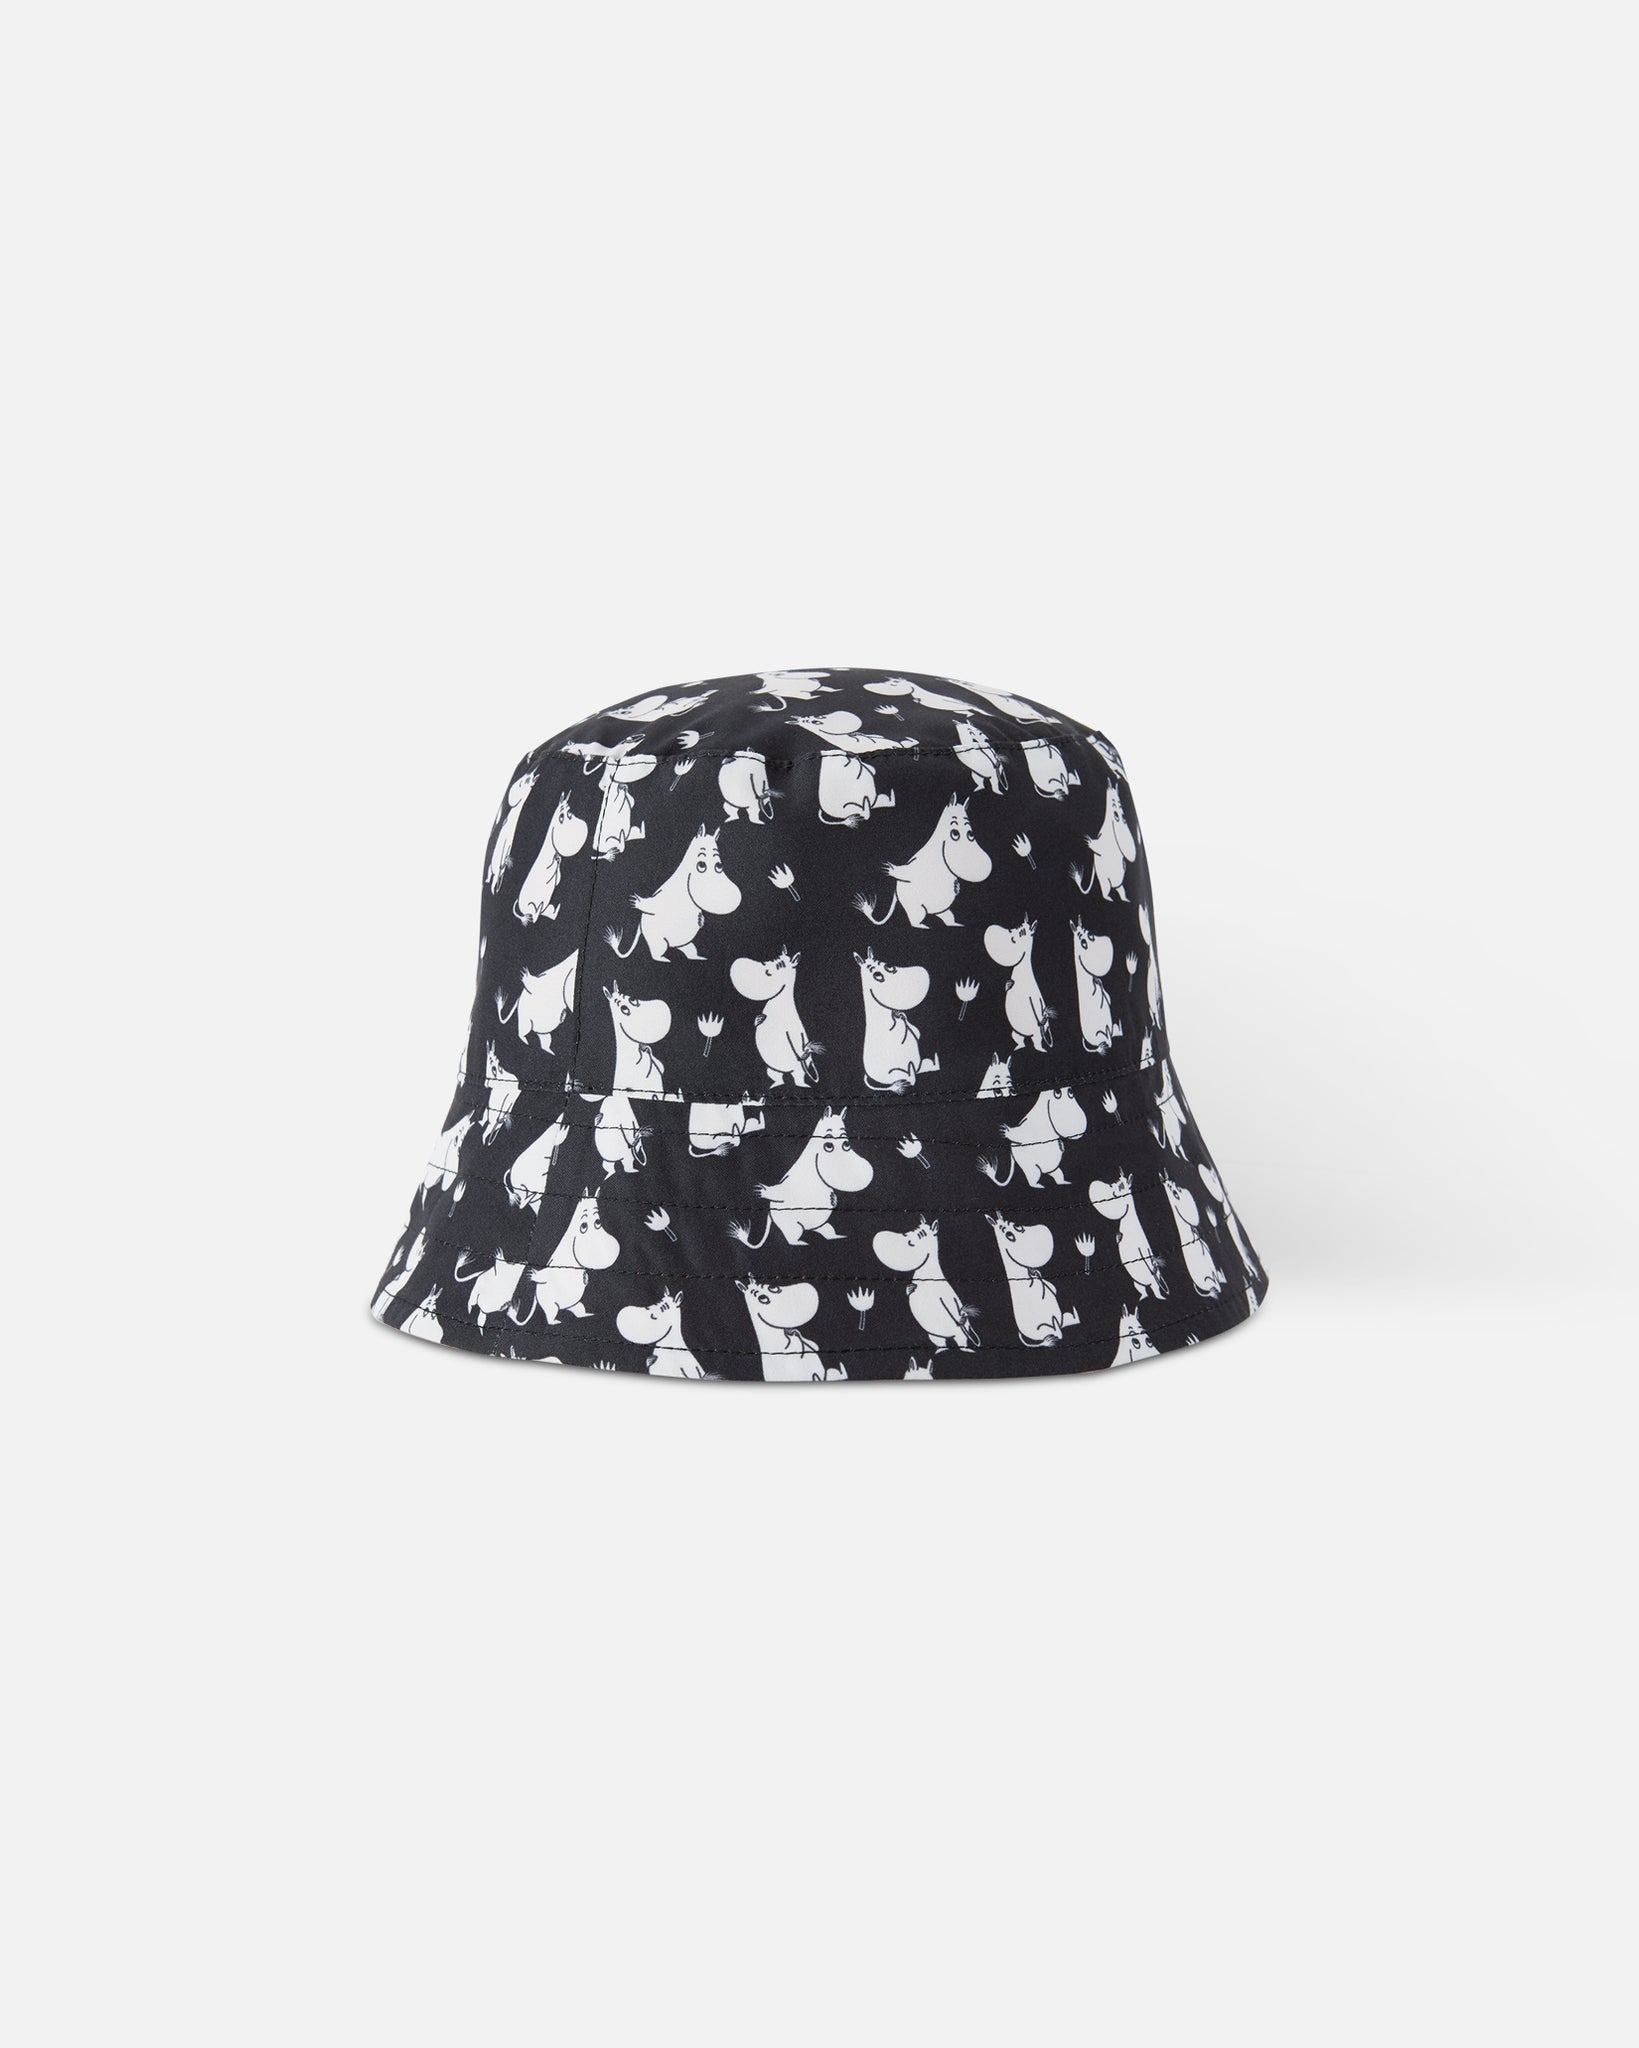 Dwustronny kapelusz przeciwsłoneczny UV Reima Moomin Svalka